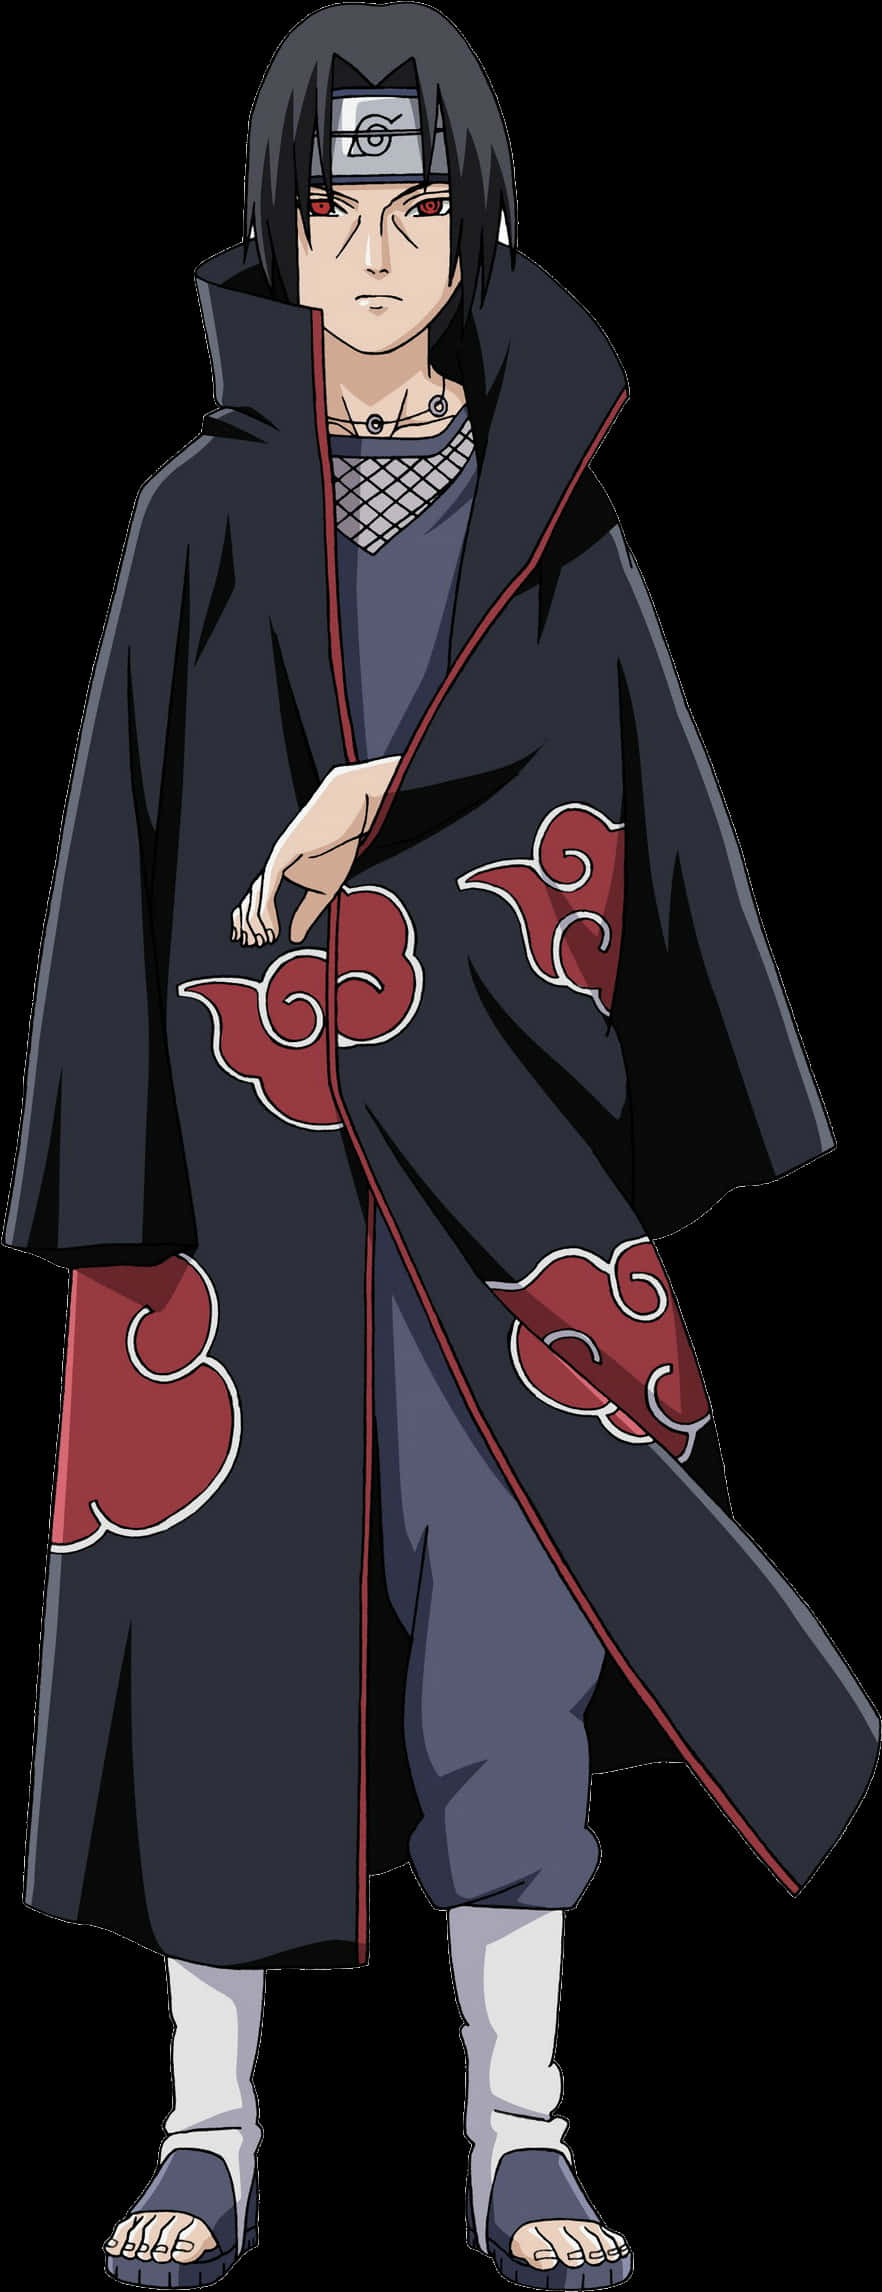 A Cartoon Of A Person Wearing A Kimono